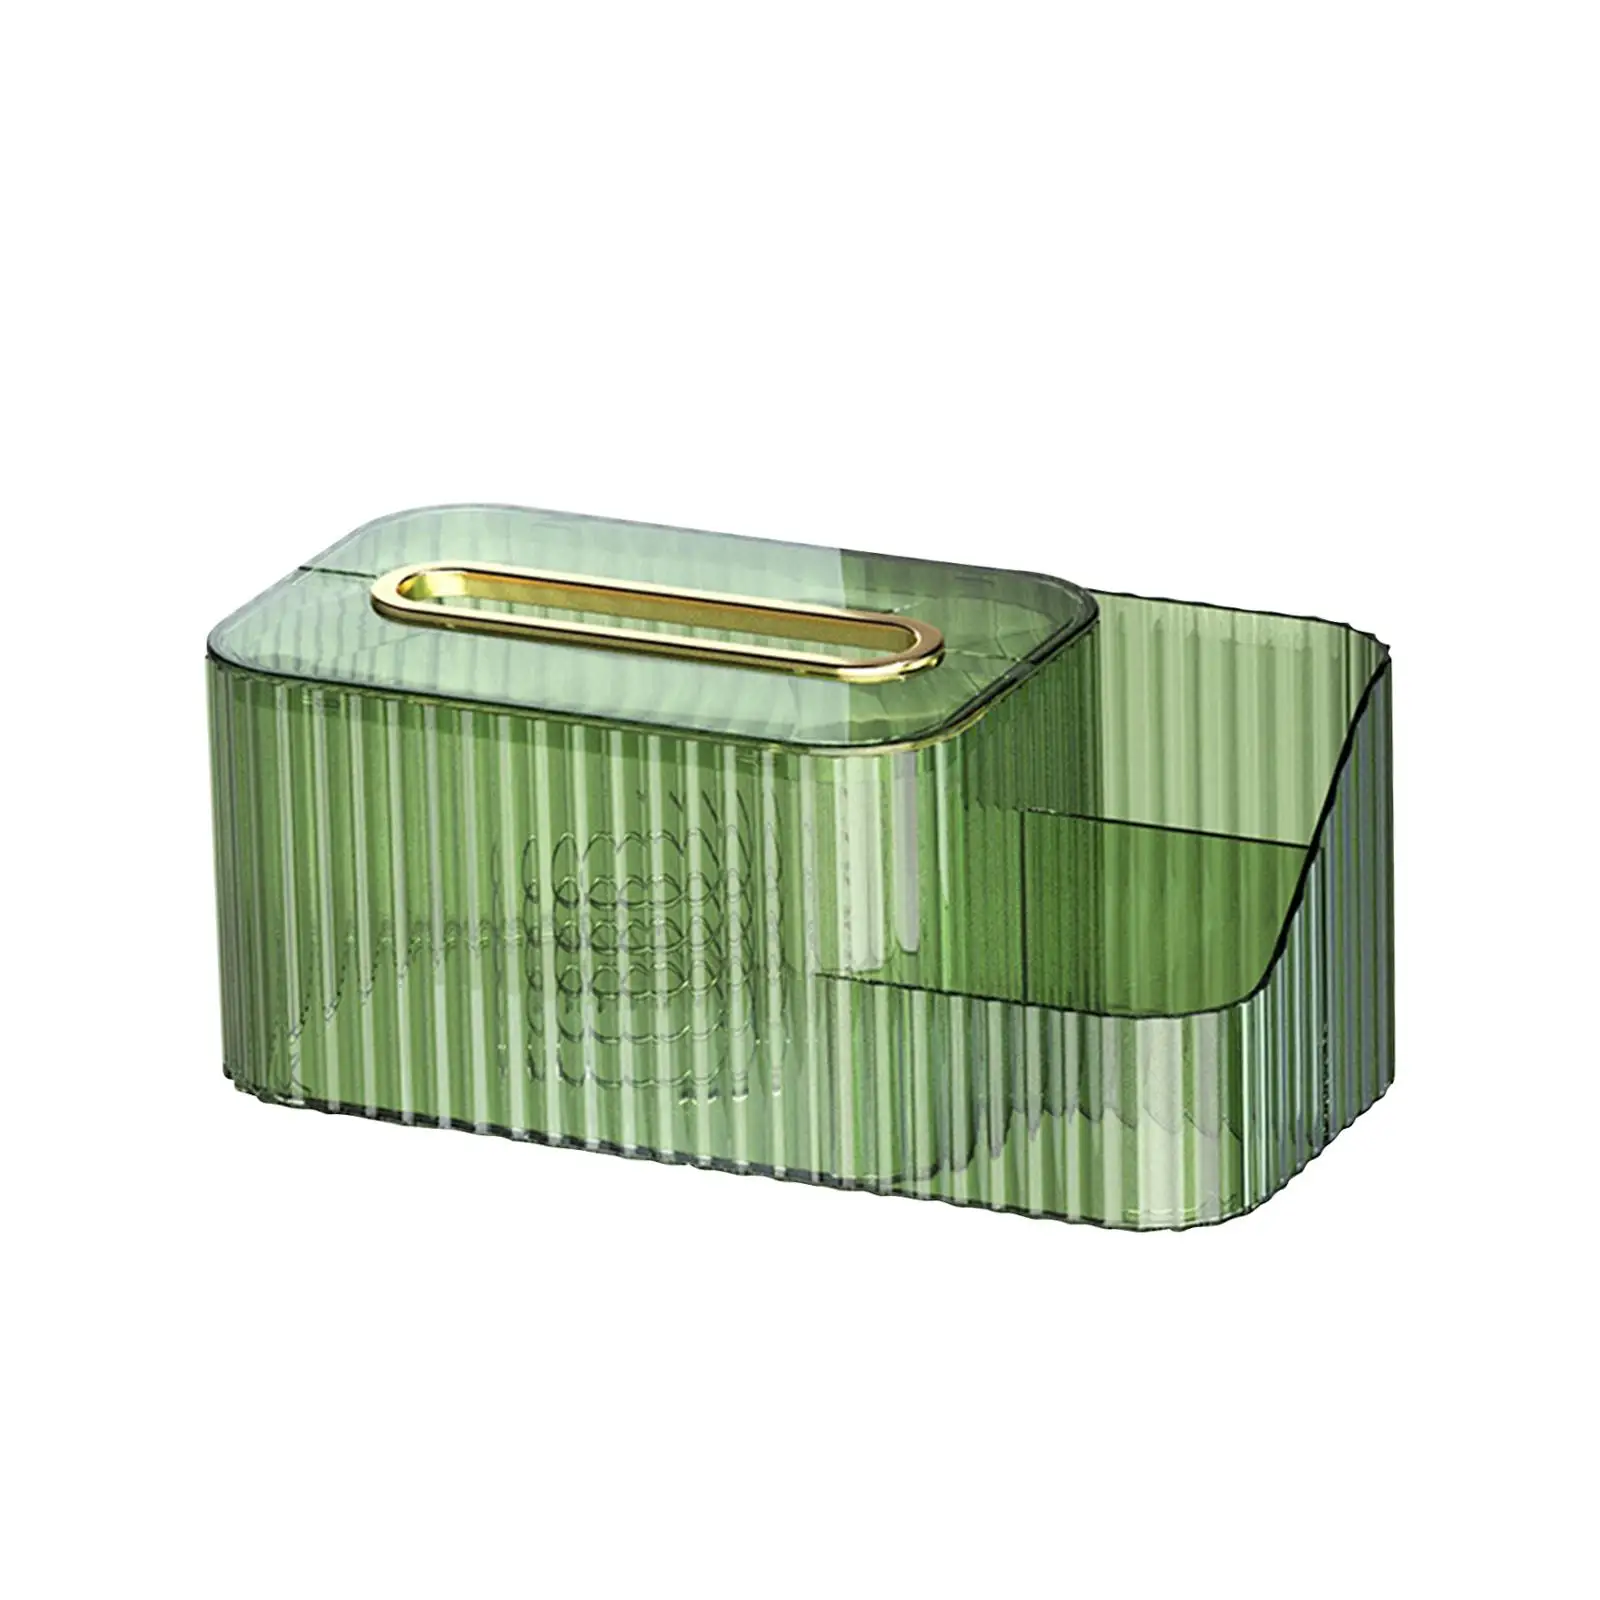 Transparent Tissue Box Holder with Vanity Organizer Tissue Storage Box for Restaurant Night Stand Desktop Office